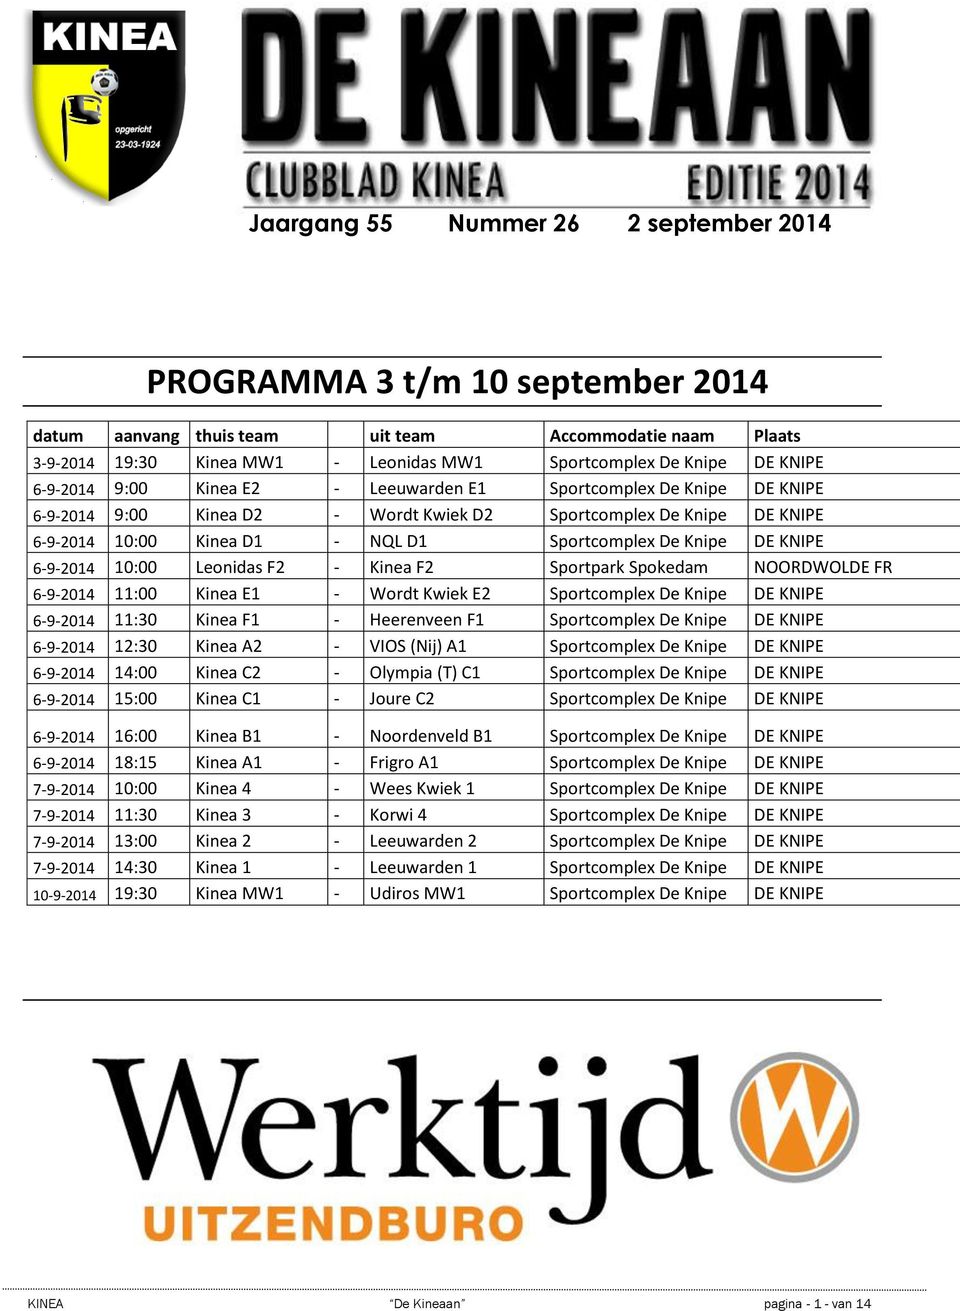 Knipe DE KNIPE 6-9-2014 10:00 Leonidas F2 - Kinea F2 Sportpark Spokedam NOORDWOLDE FR 6-9-2014 11:00 Kinea E1 - Wordt Kwiek E2 Sportcomplex De Knipe DE KNIPE 6-9-2014 11:30 Kinea F1 - Heerenveen F1